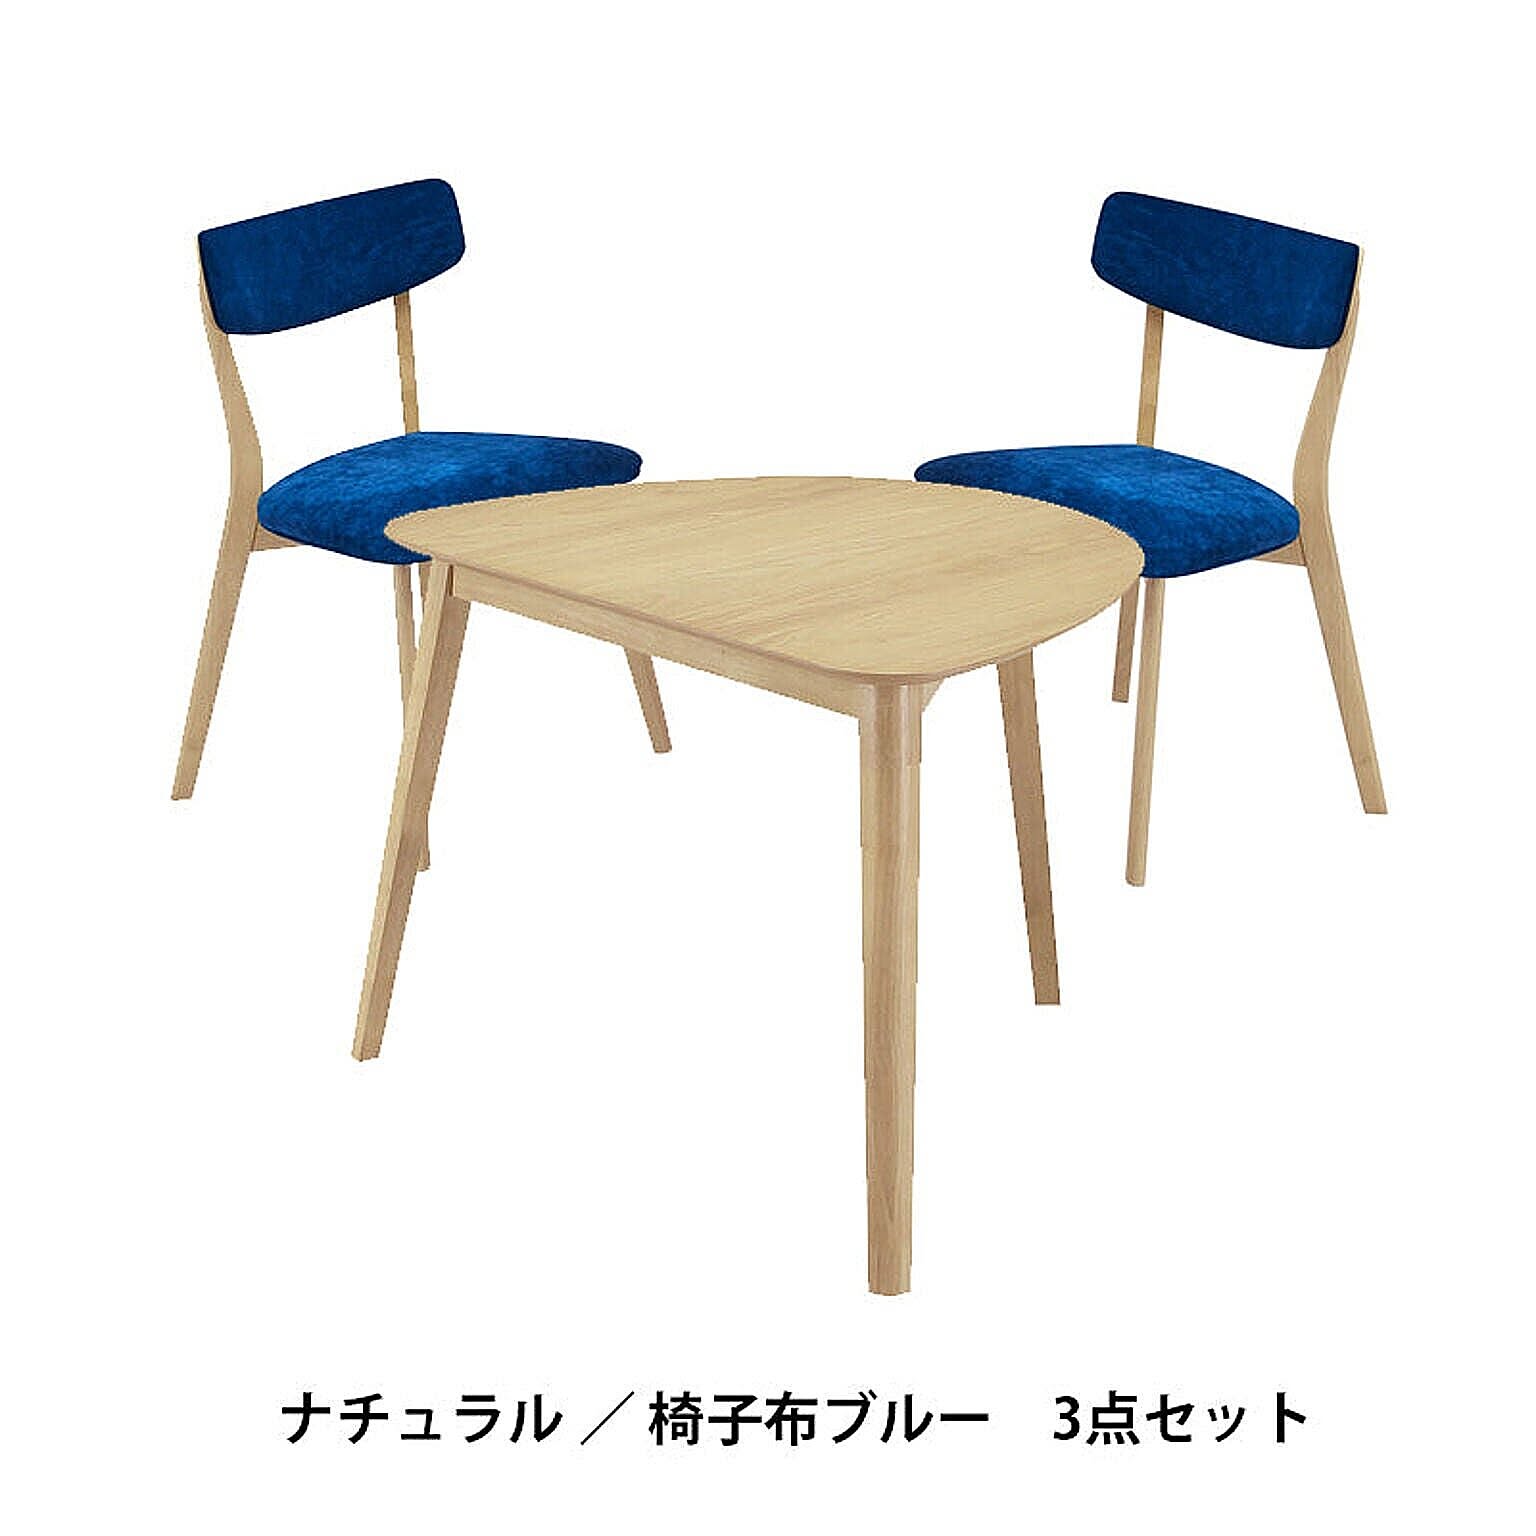 関家具 PINGU ダイニング3点セット テーブル×1 チェア×2 NA 椅子布